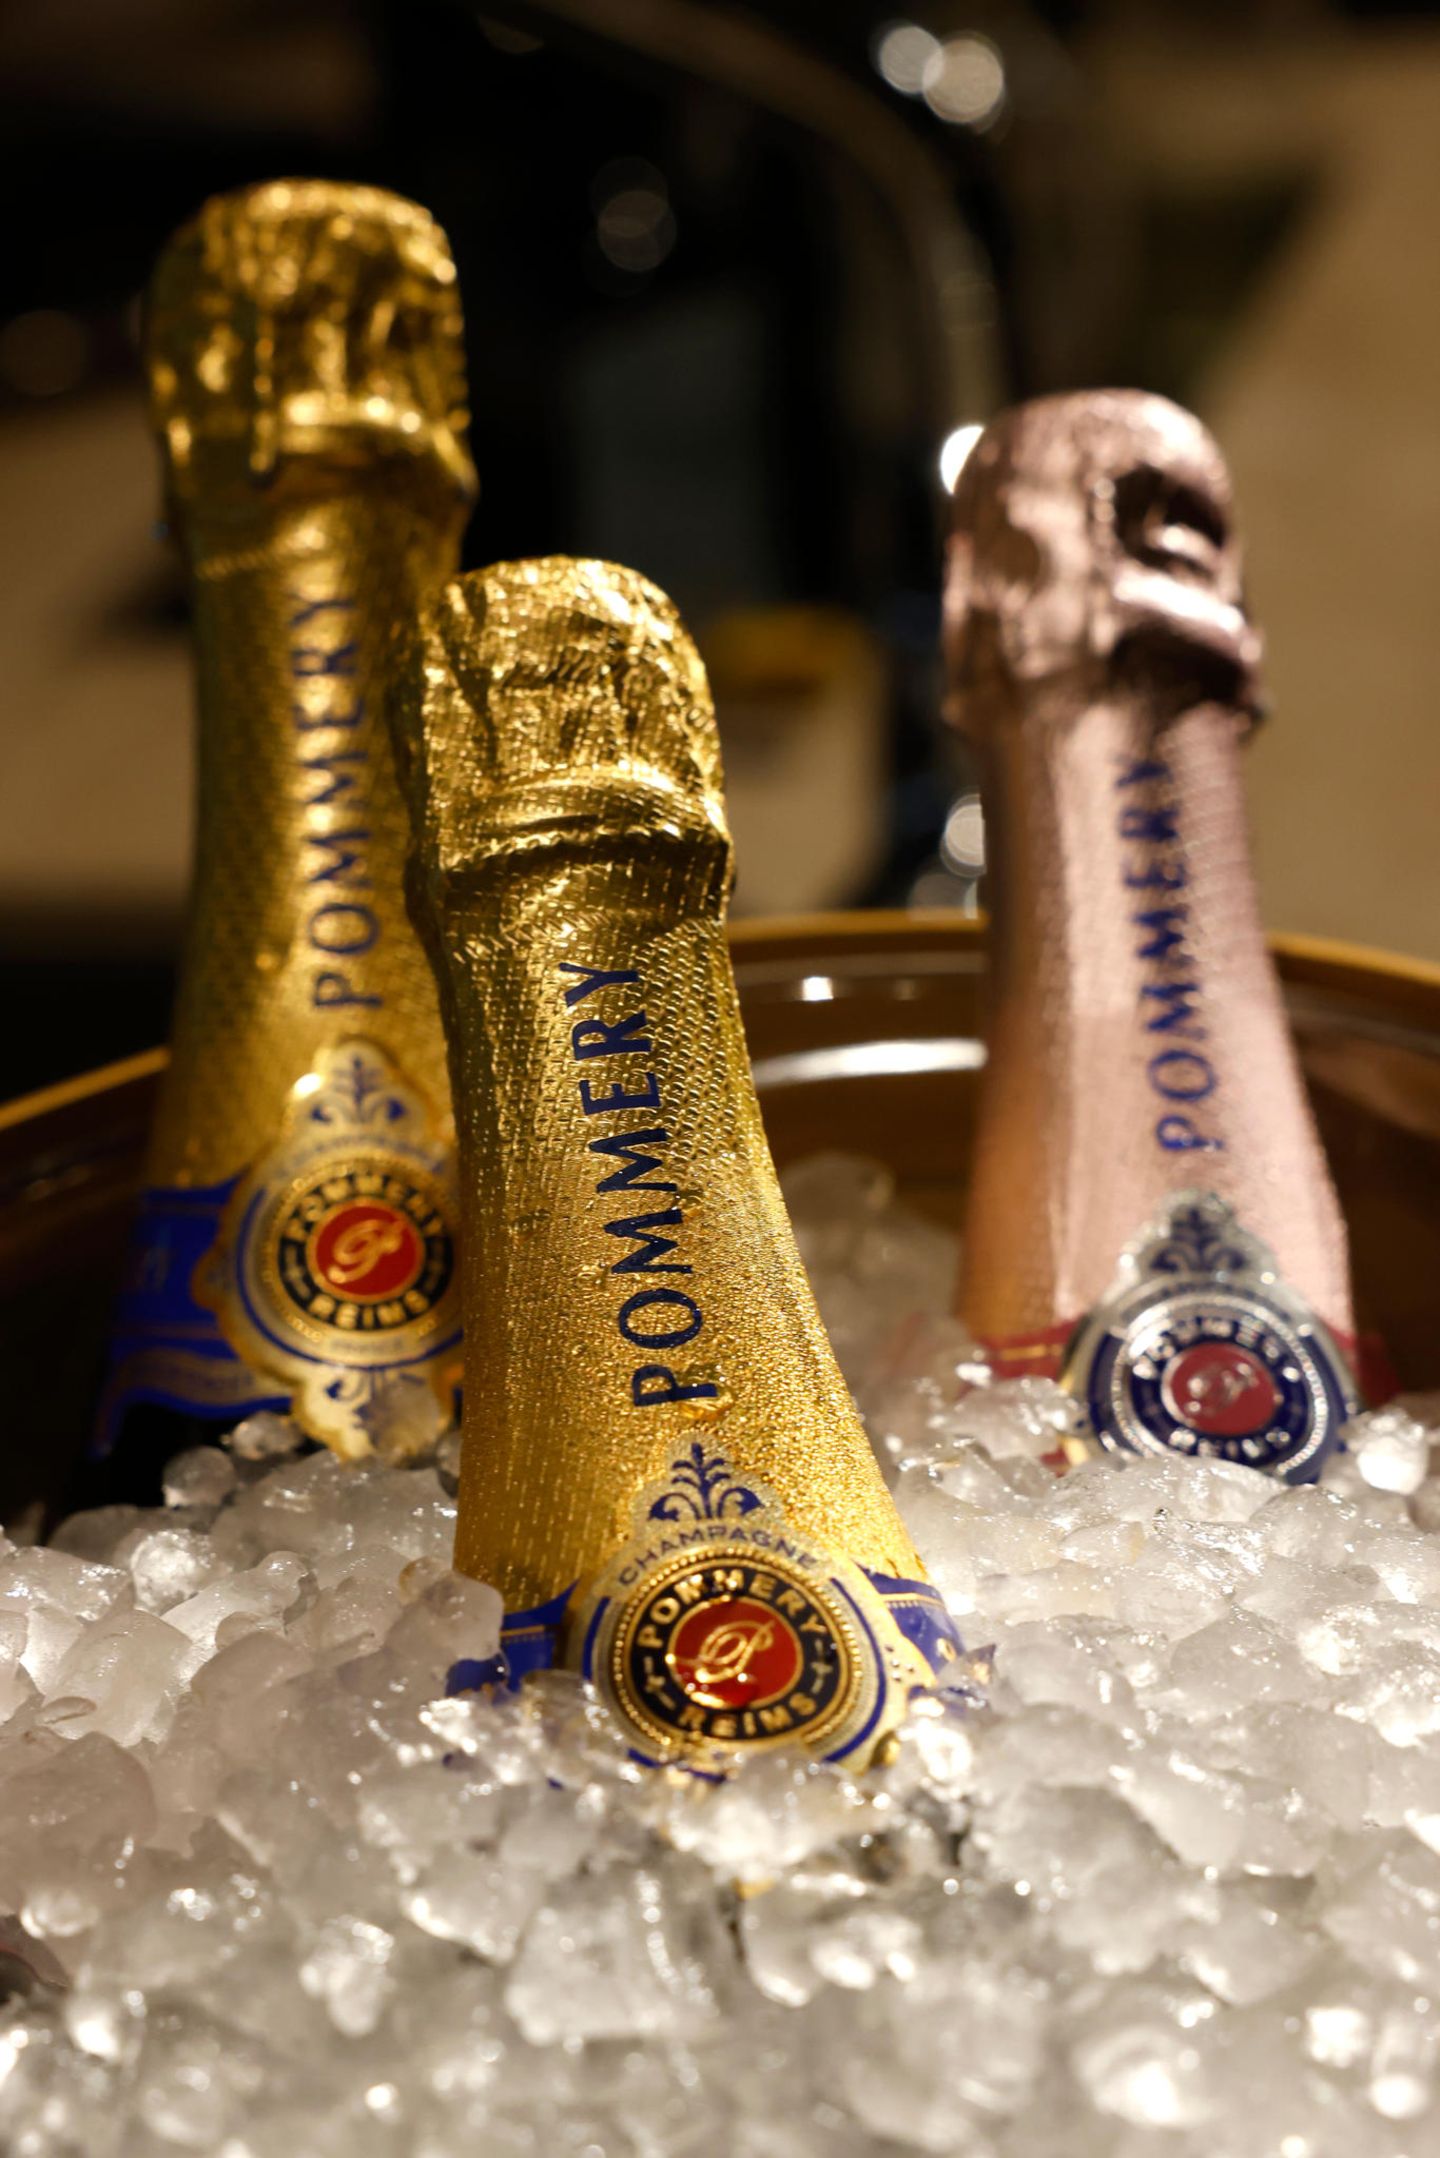 Für eine prickelnde Abkühlung für zwischendurch sorgt Pommery Champagner.